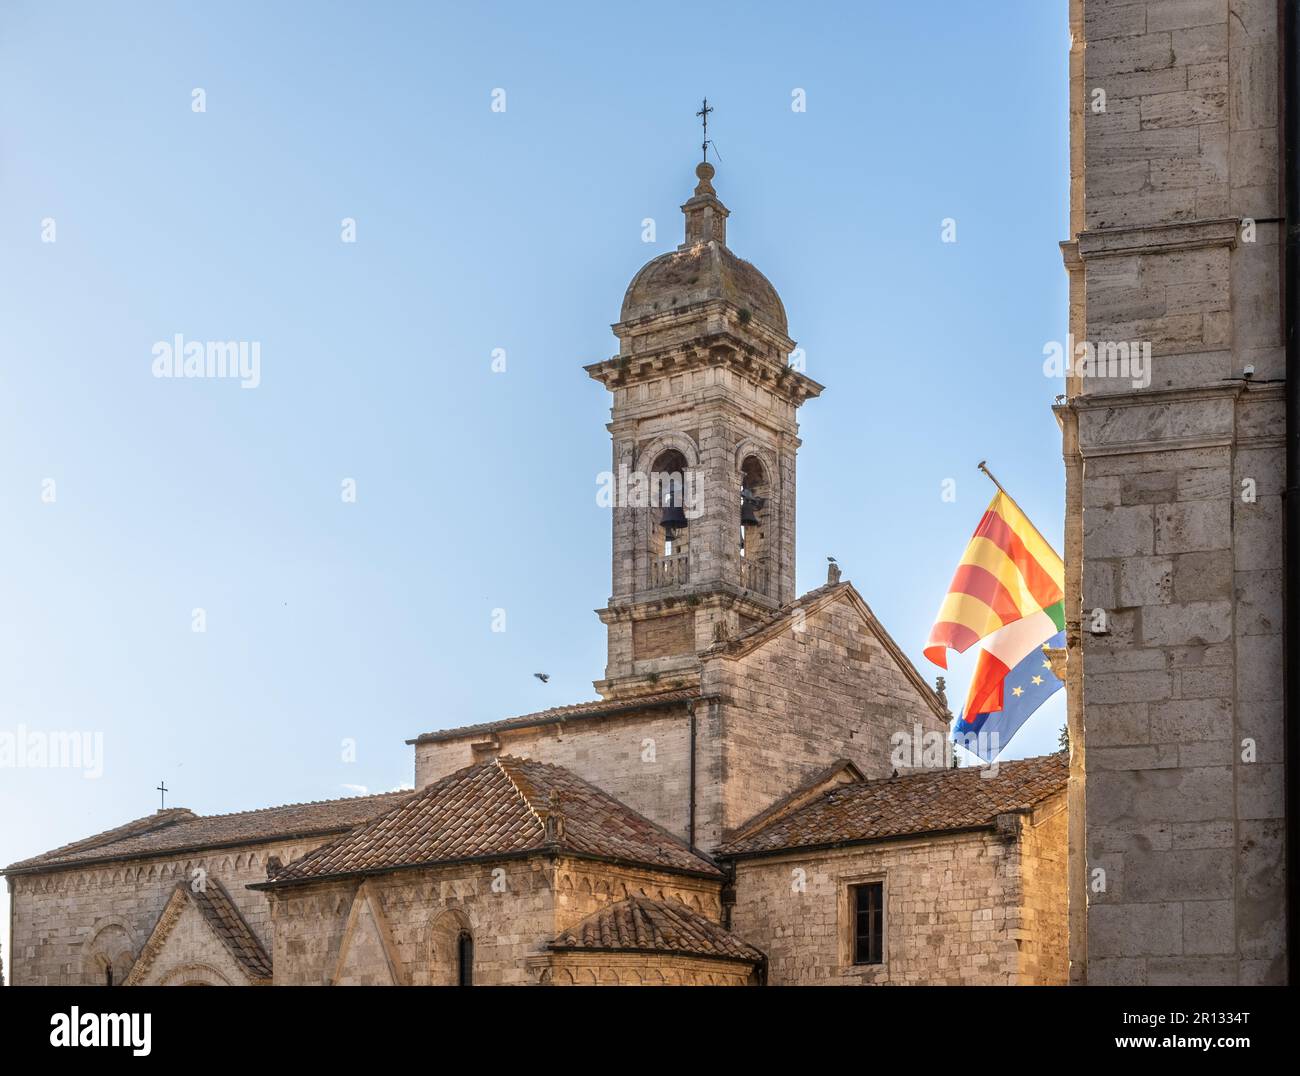 L'église romane historique de San Quirico d'Orcia, région toscane en Italie centrale - Europe Banque D'Images